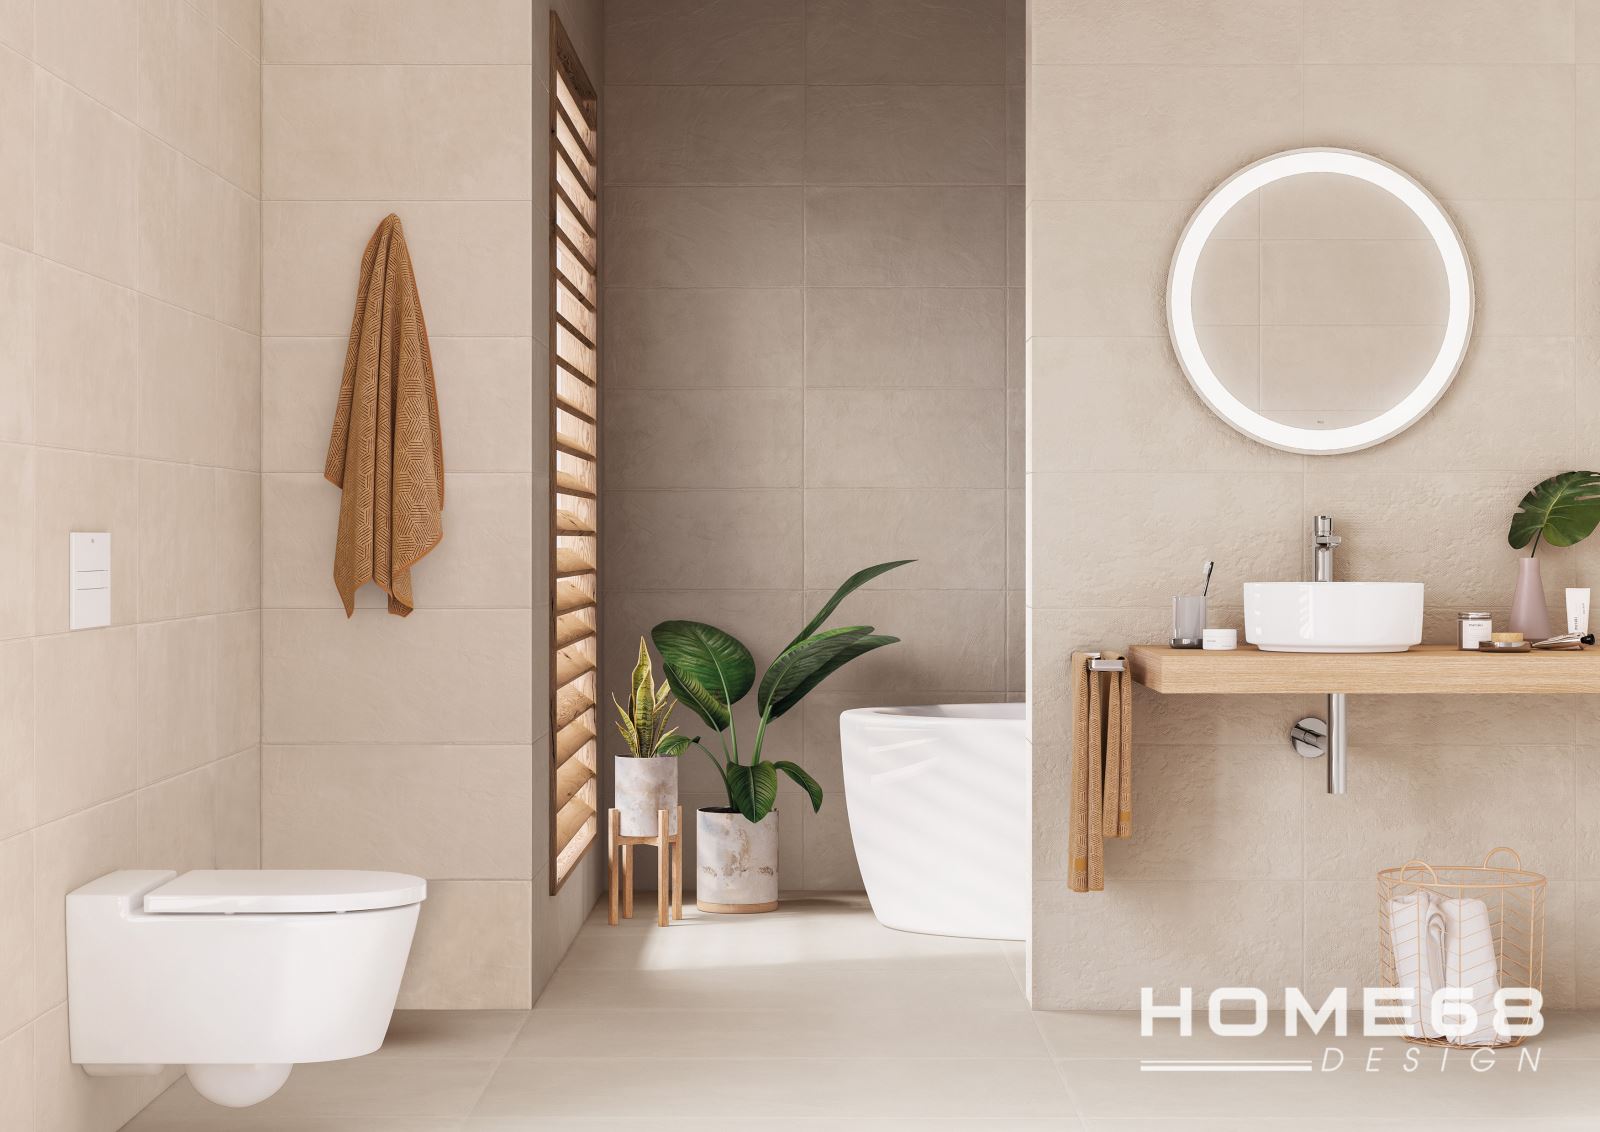 Thiết kế phòng tắm phong cách Minimal Bathroom đầy ấn tượng và cuốn hút